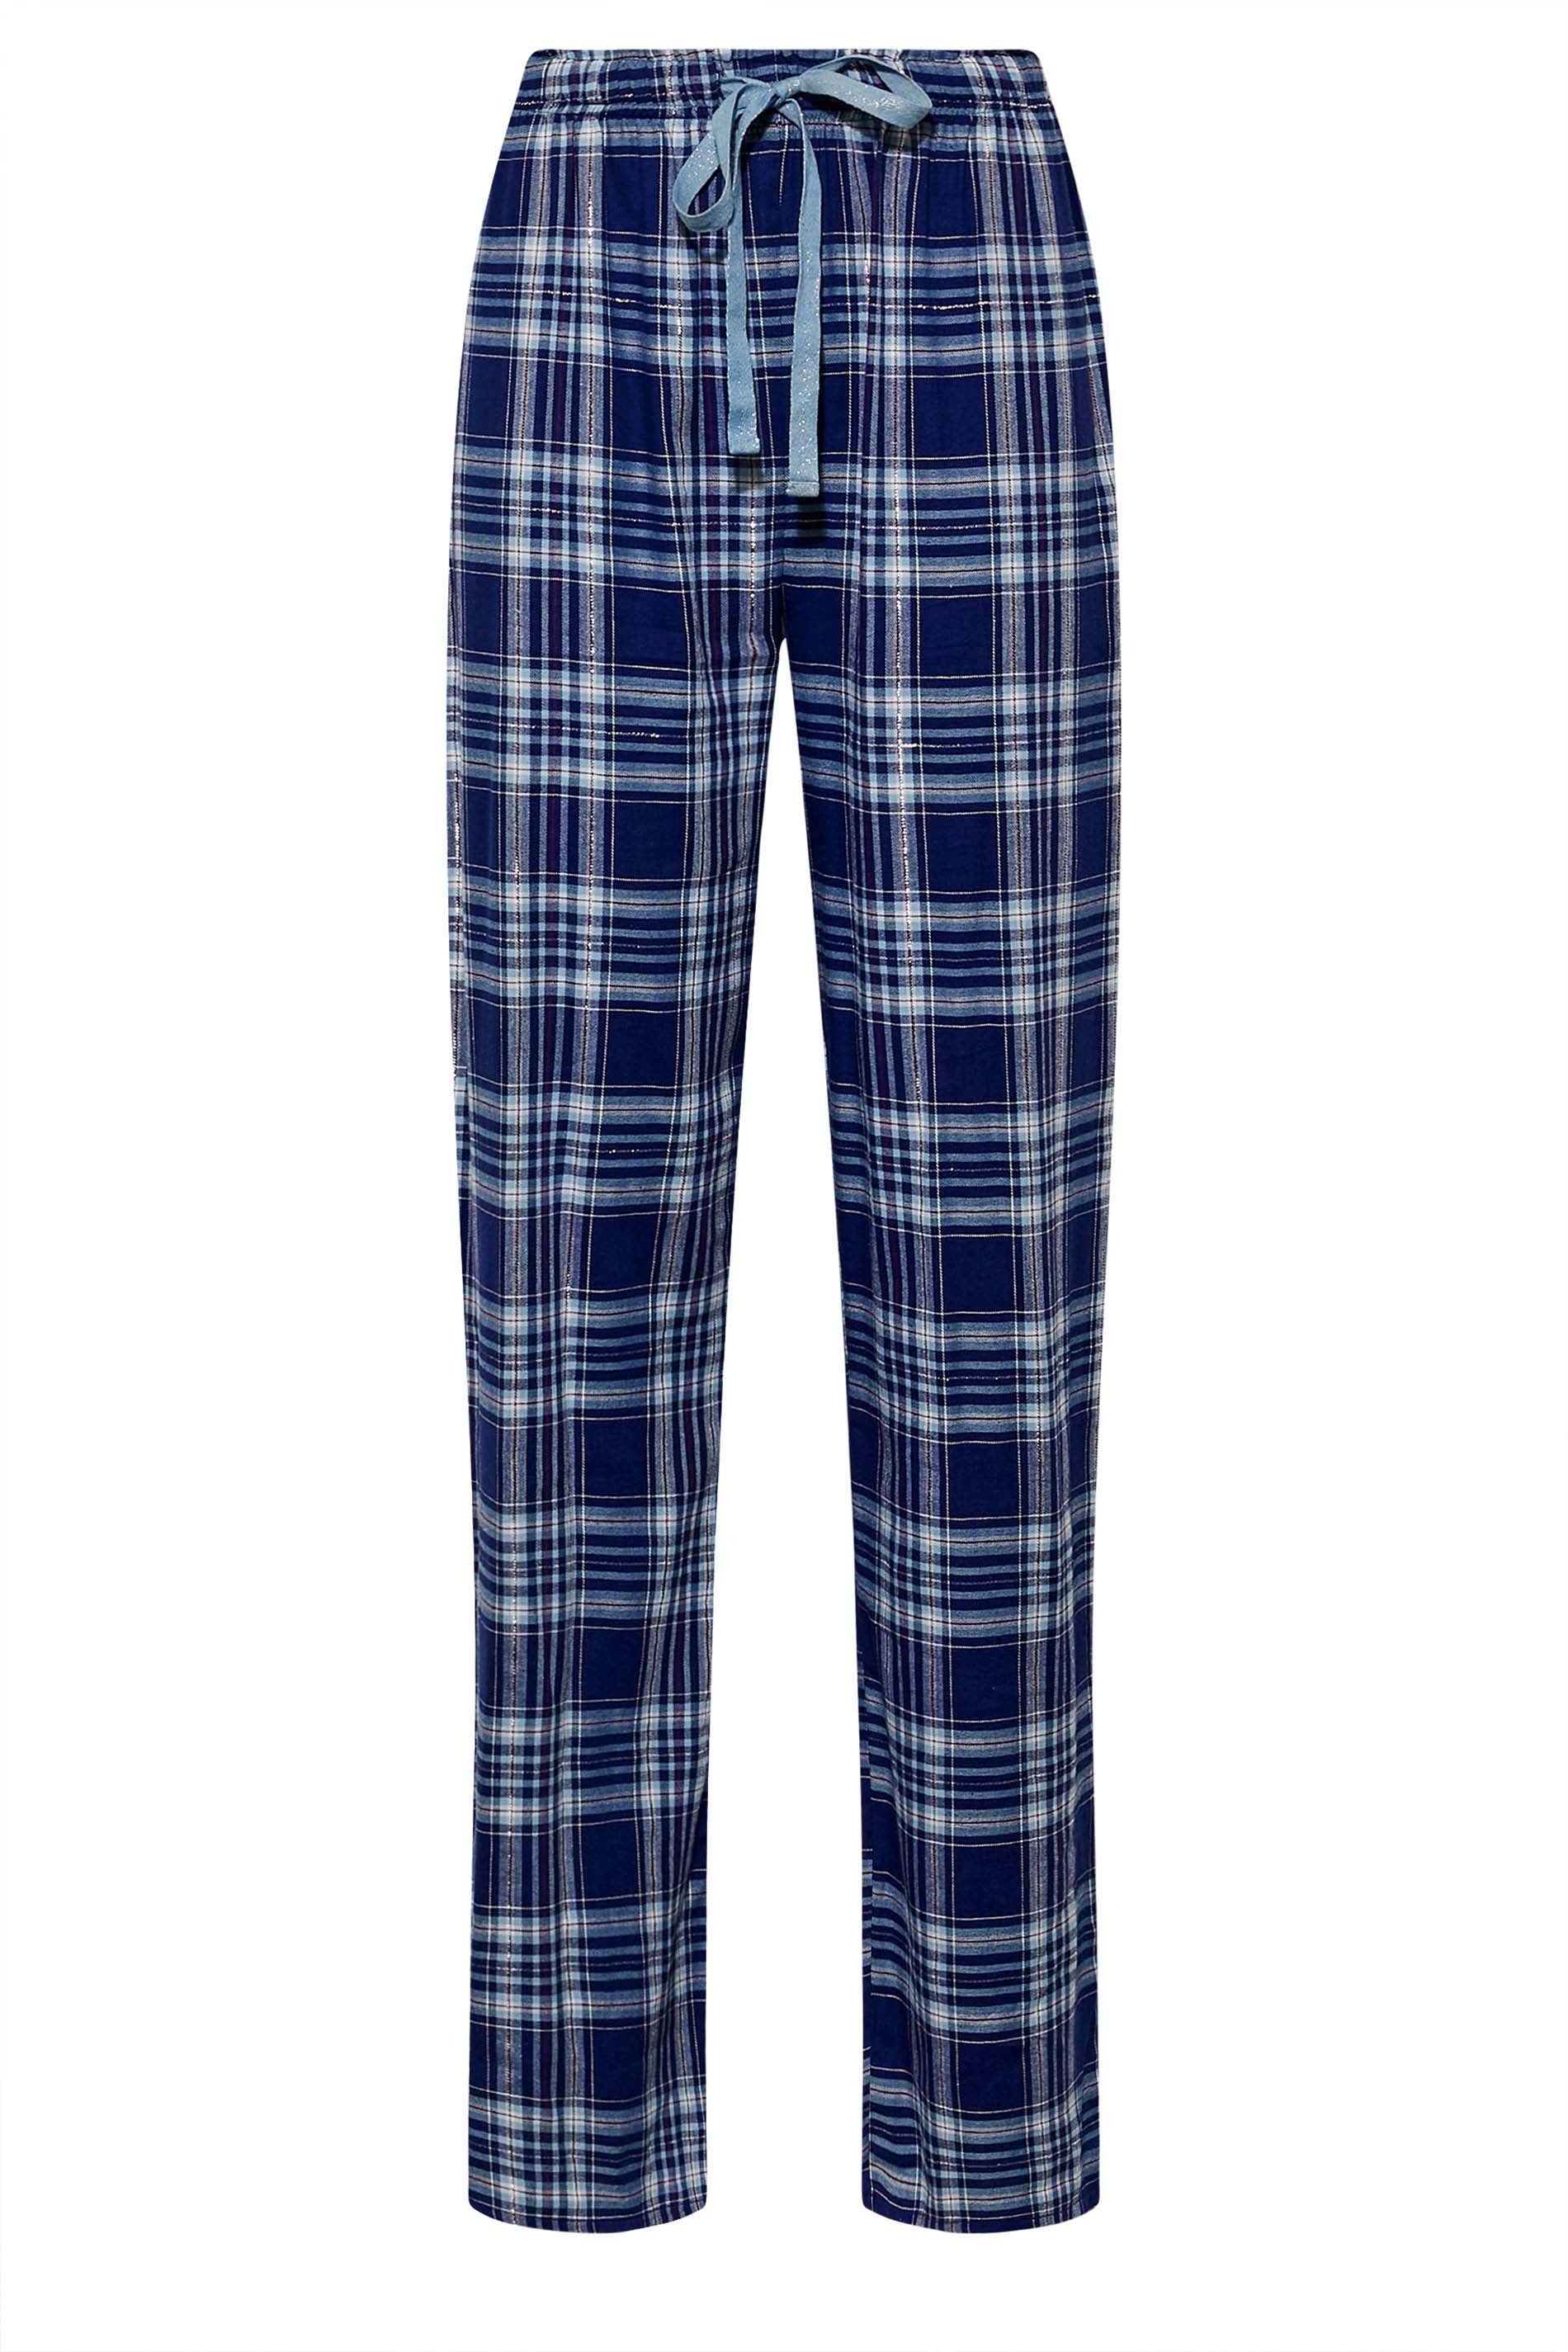 LTS Tall Women's Navy Blue Woven Check Pyjama Bottoms | Long Tall Sally